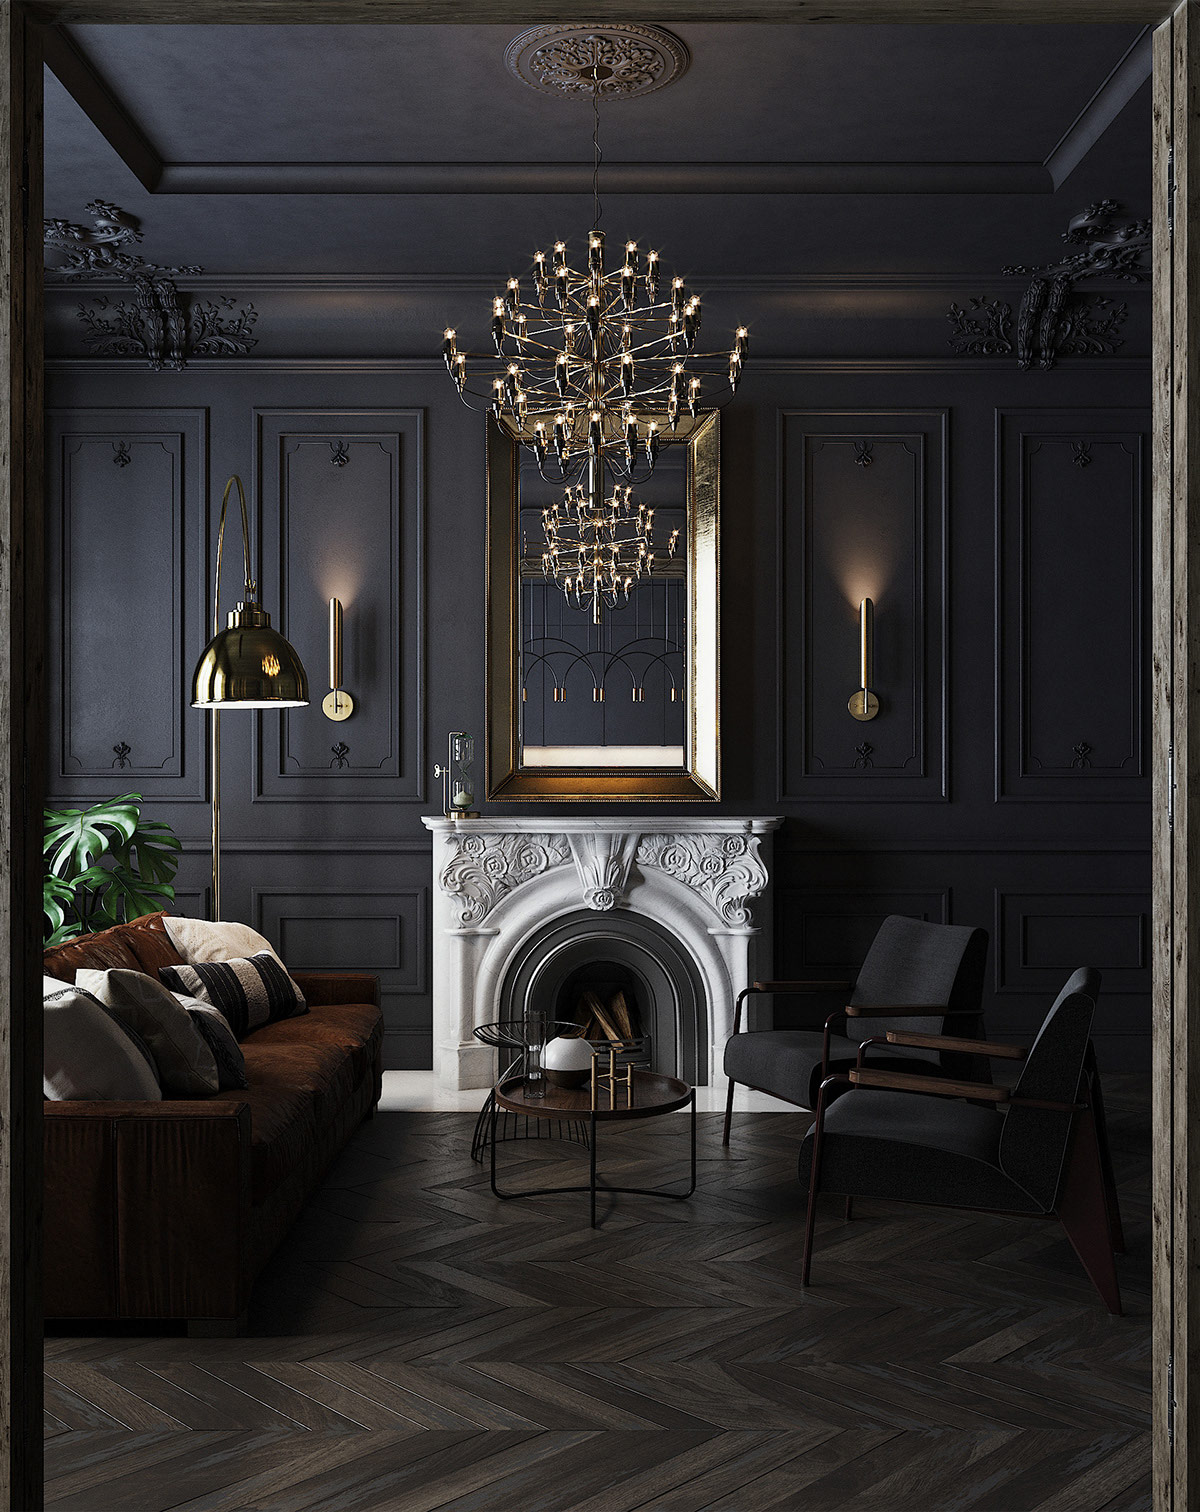 Moody Gothic Interior Design - Woodgrain